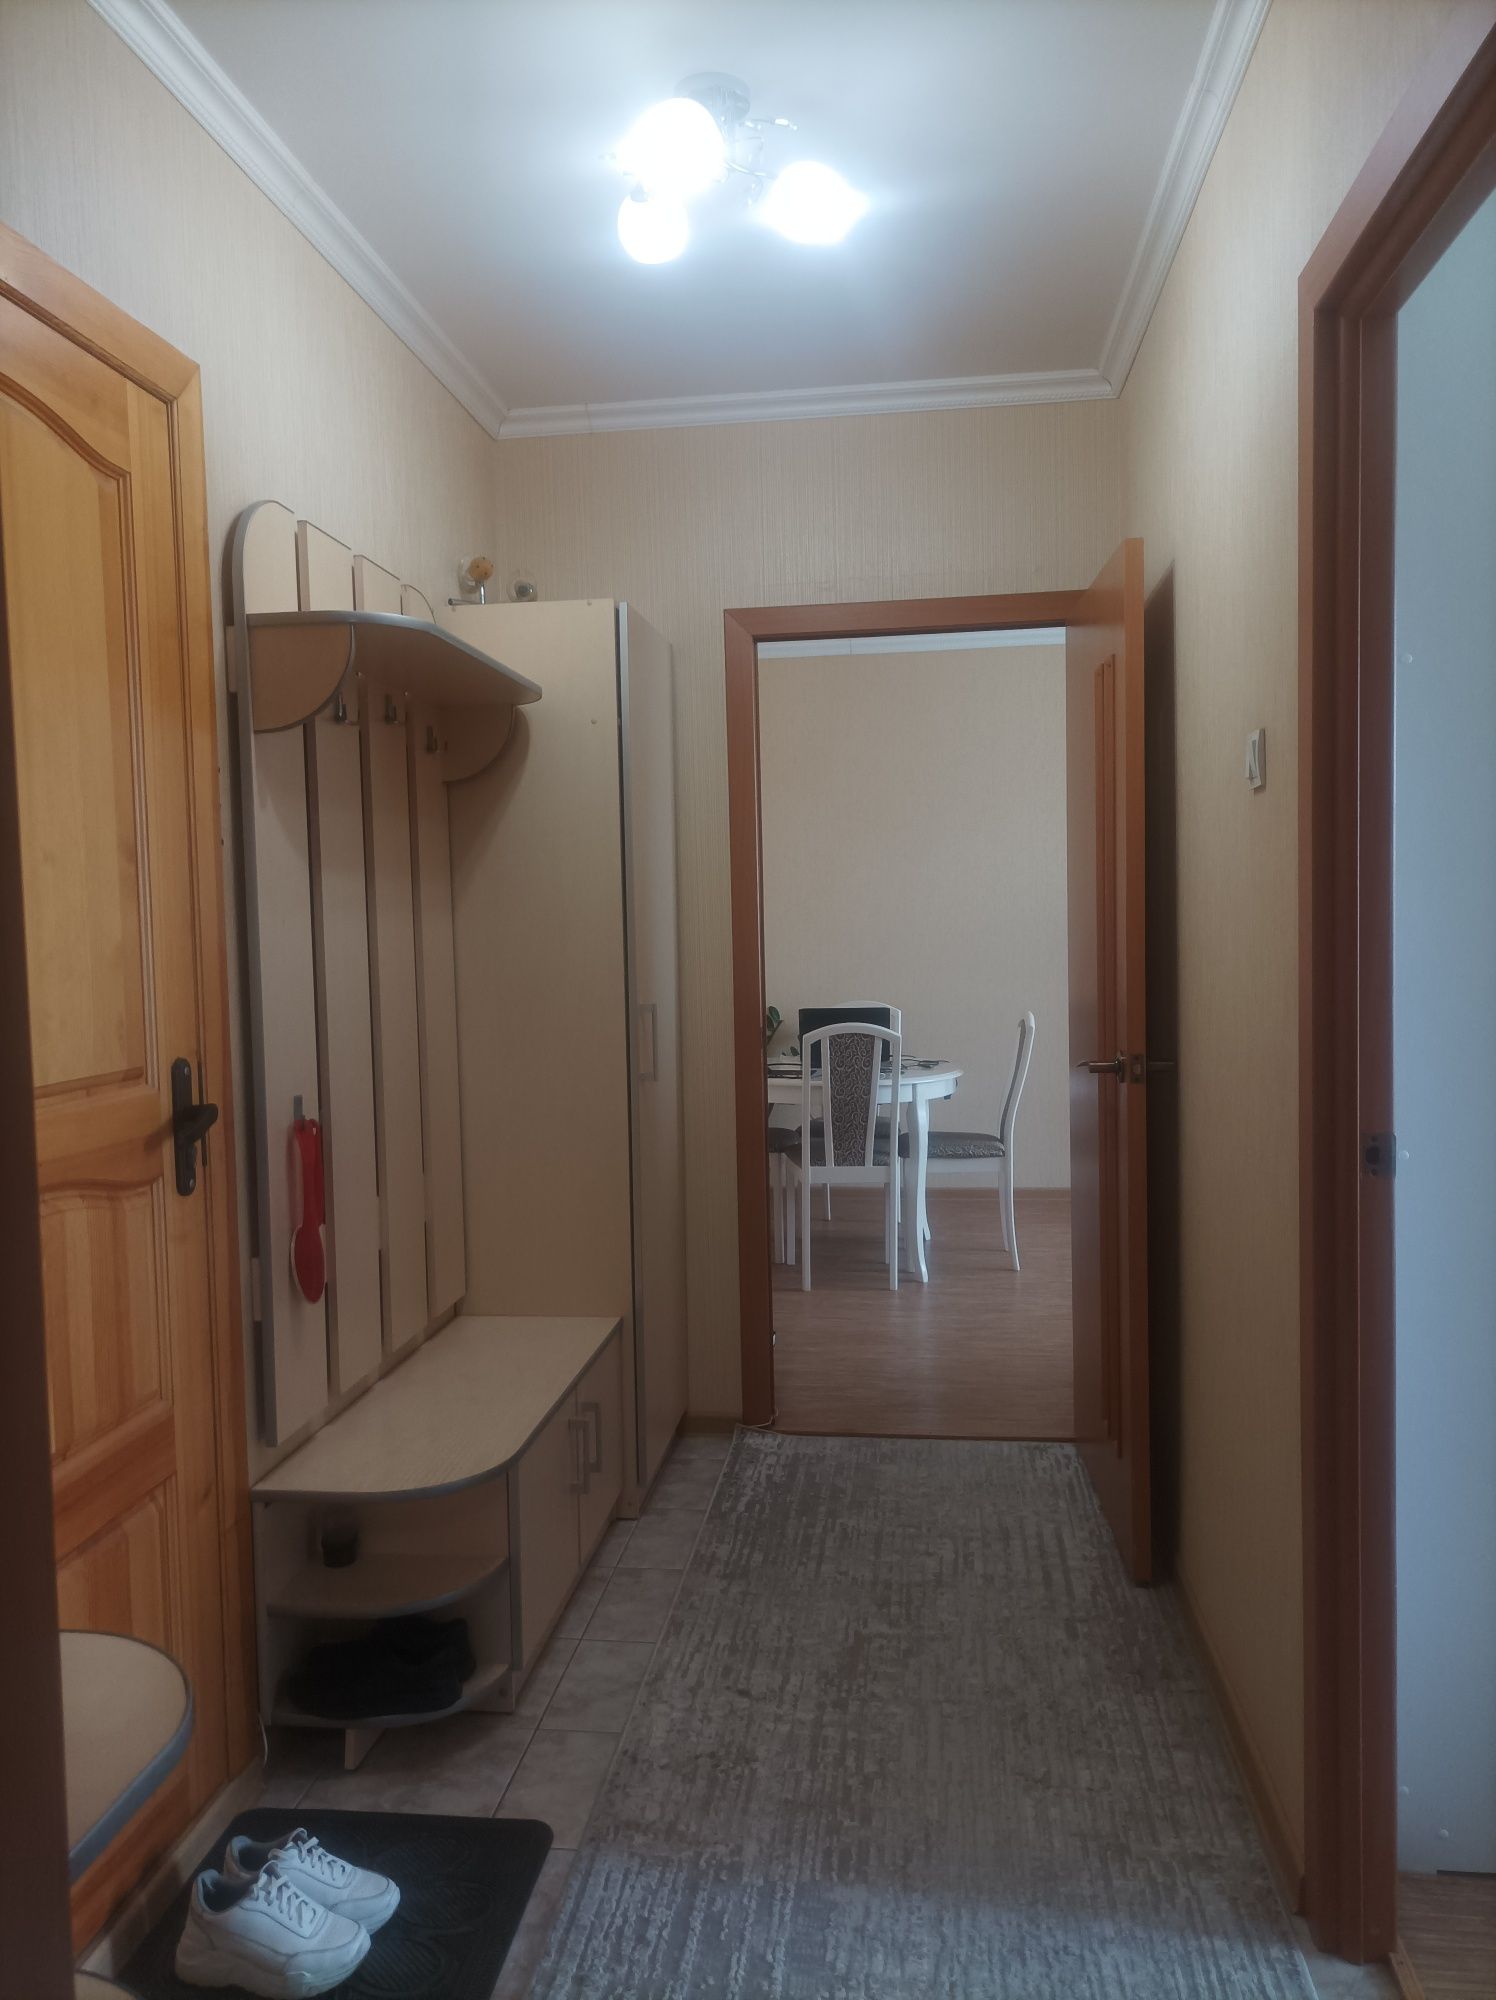 Продам или поменяю 2-х комнатную в Павлодаре на Астану